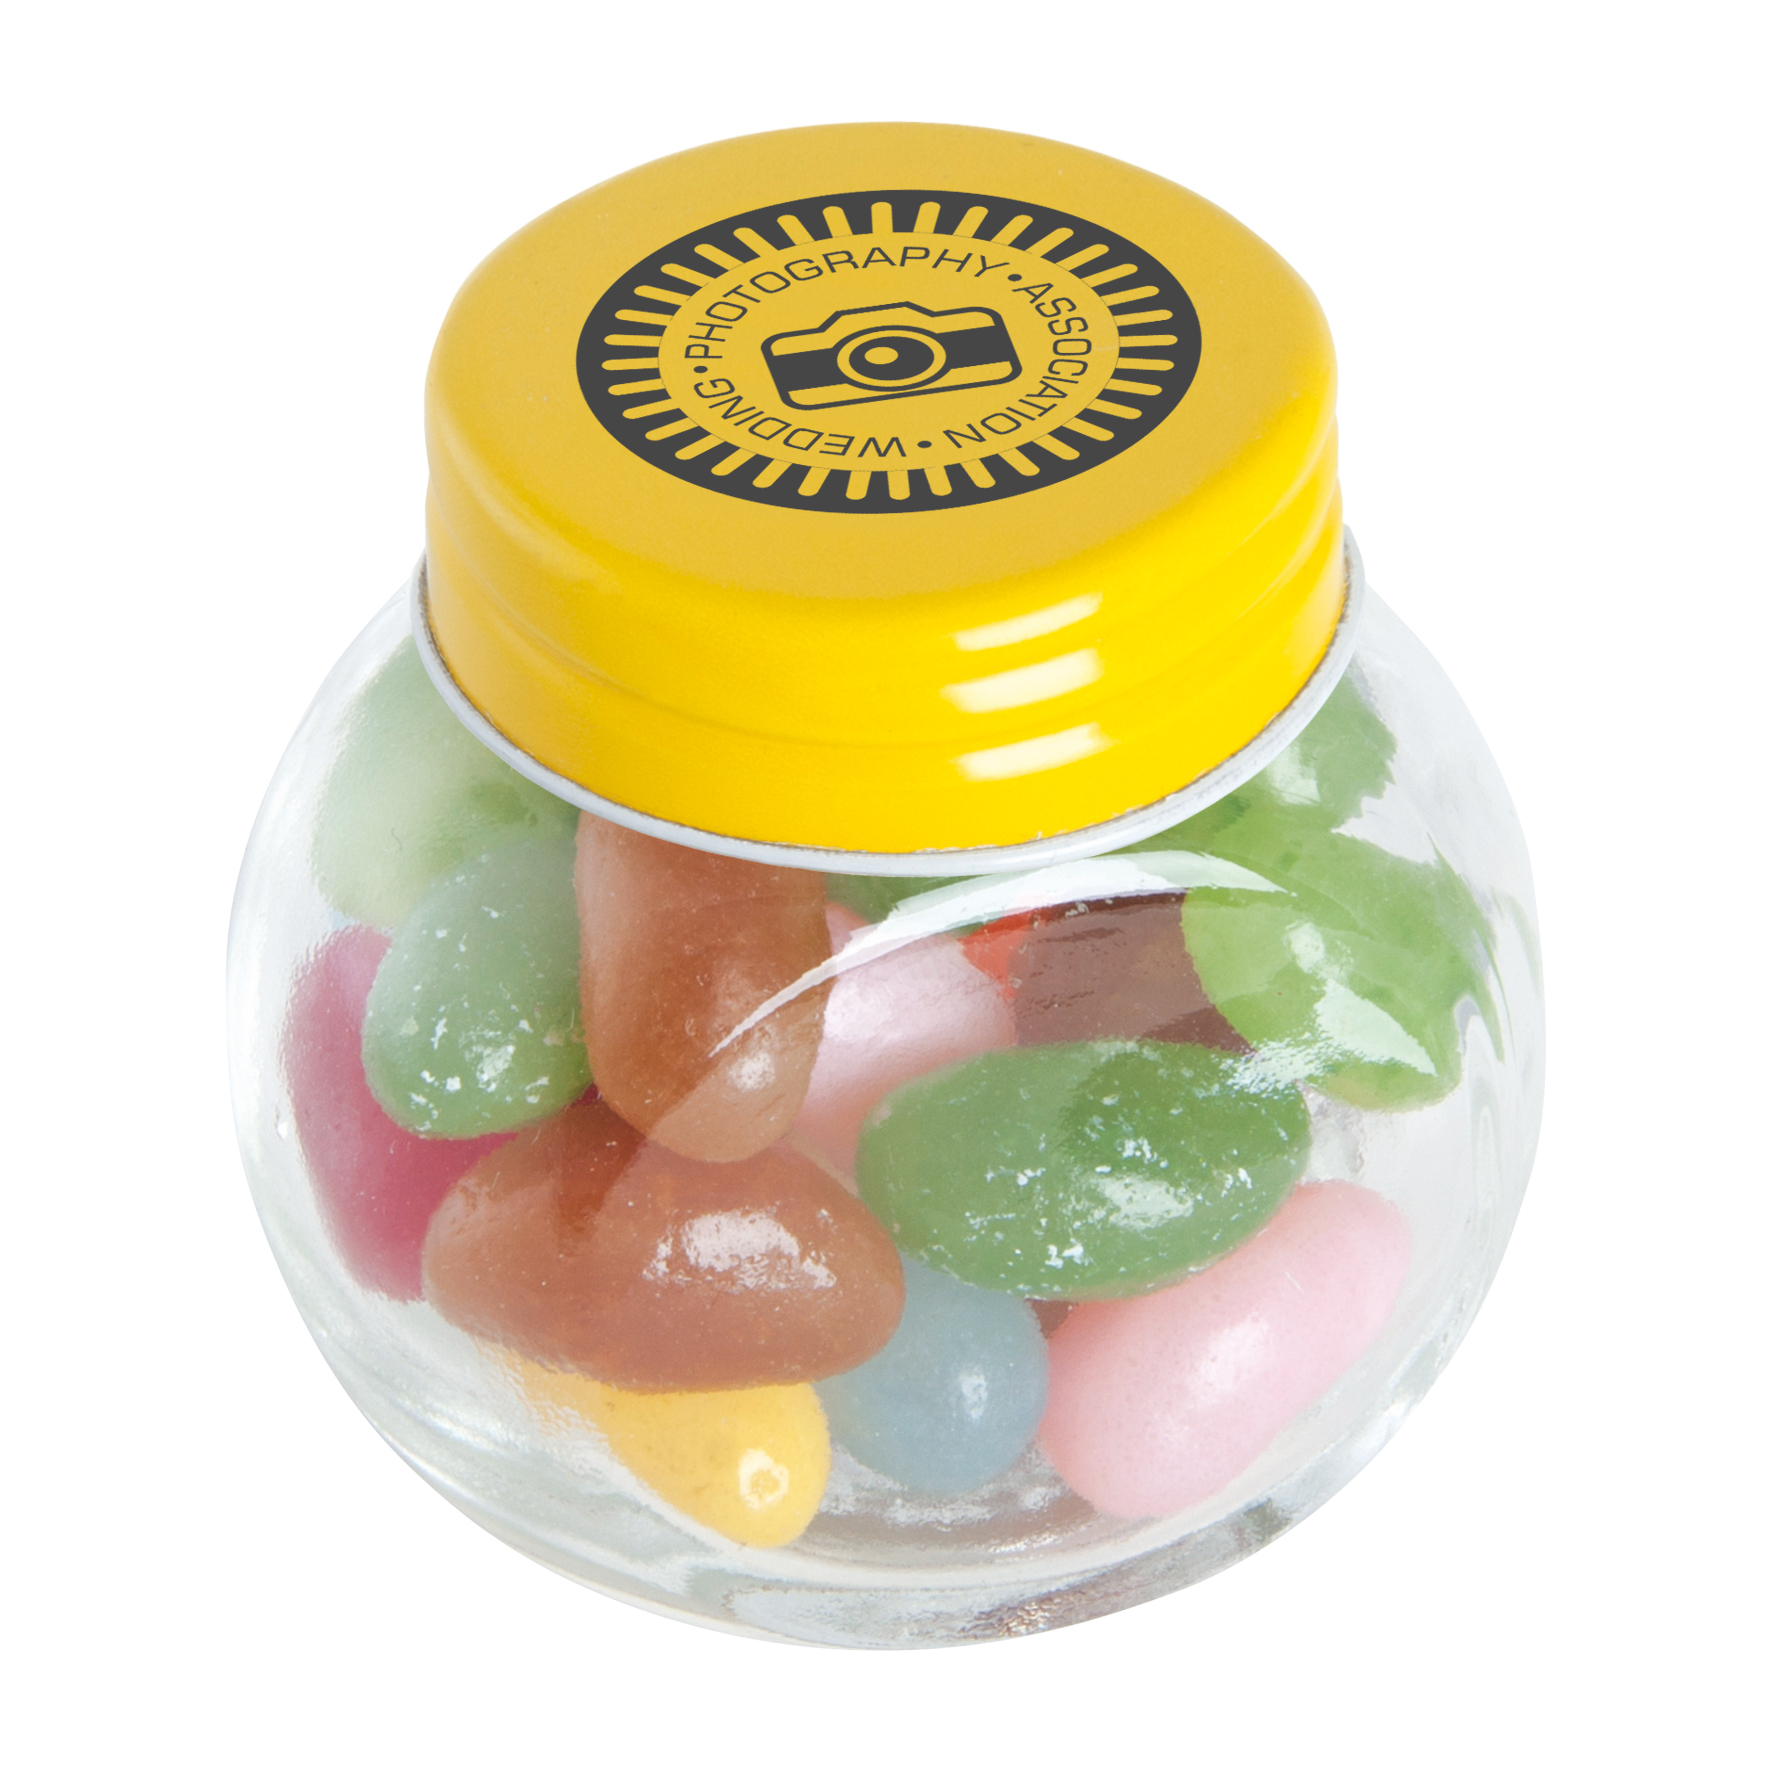 c 0163jb 06 09 - Small glass jar with mints